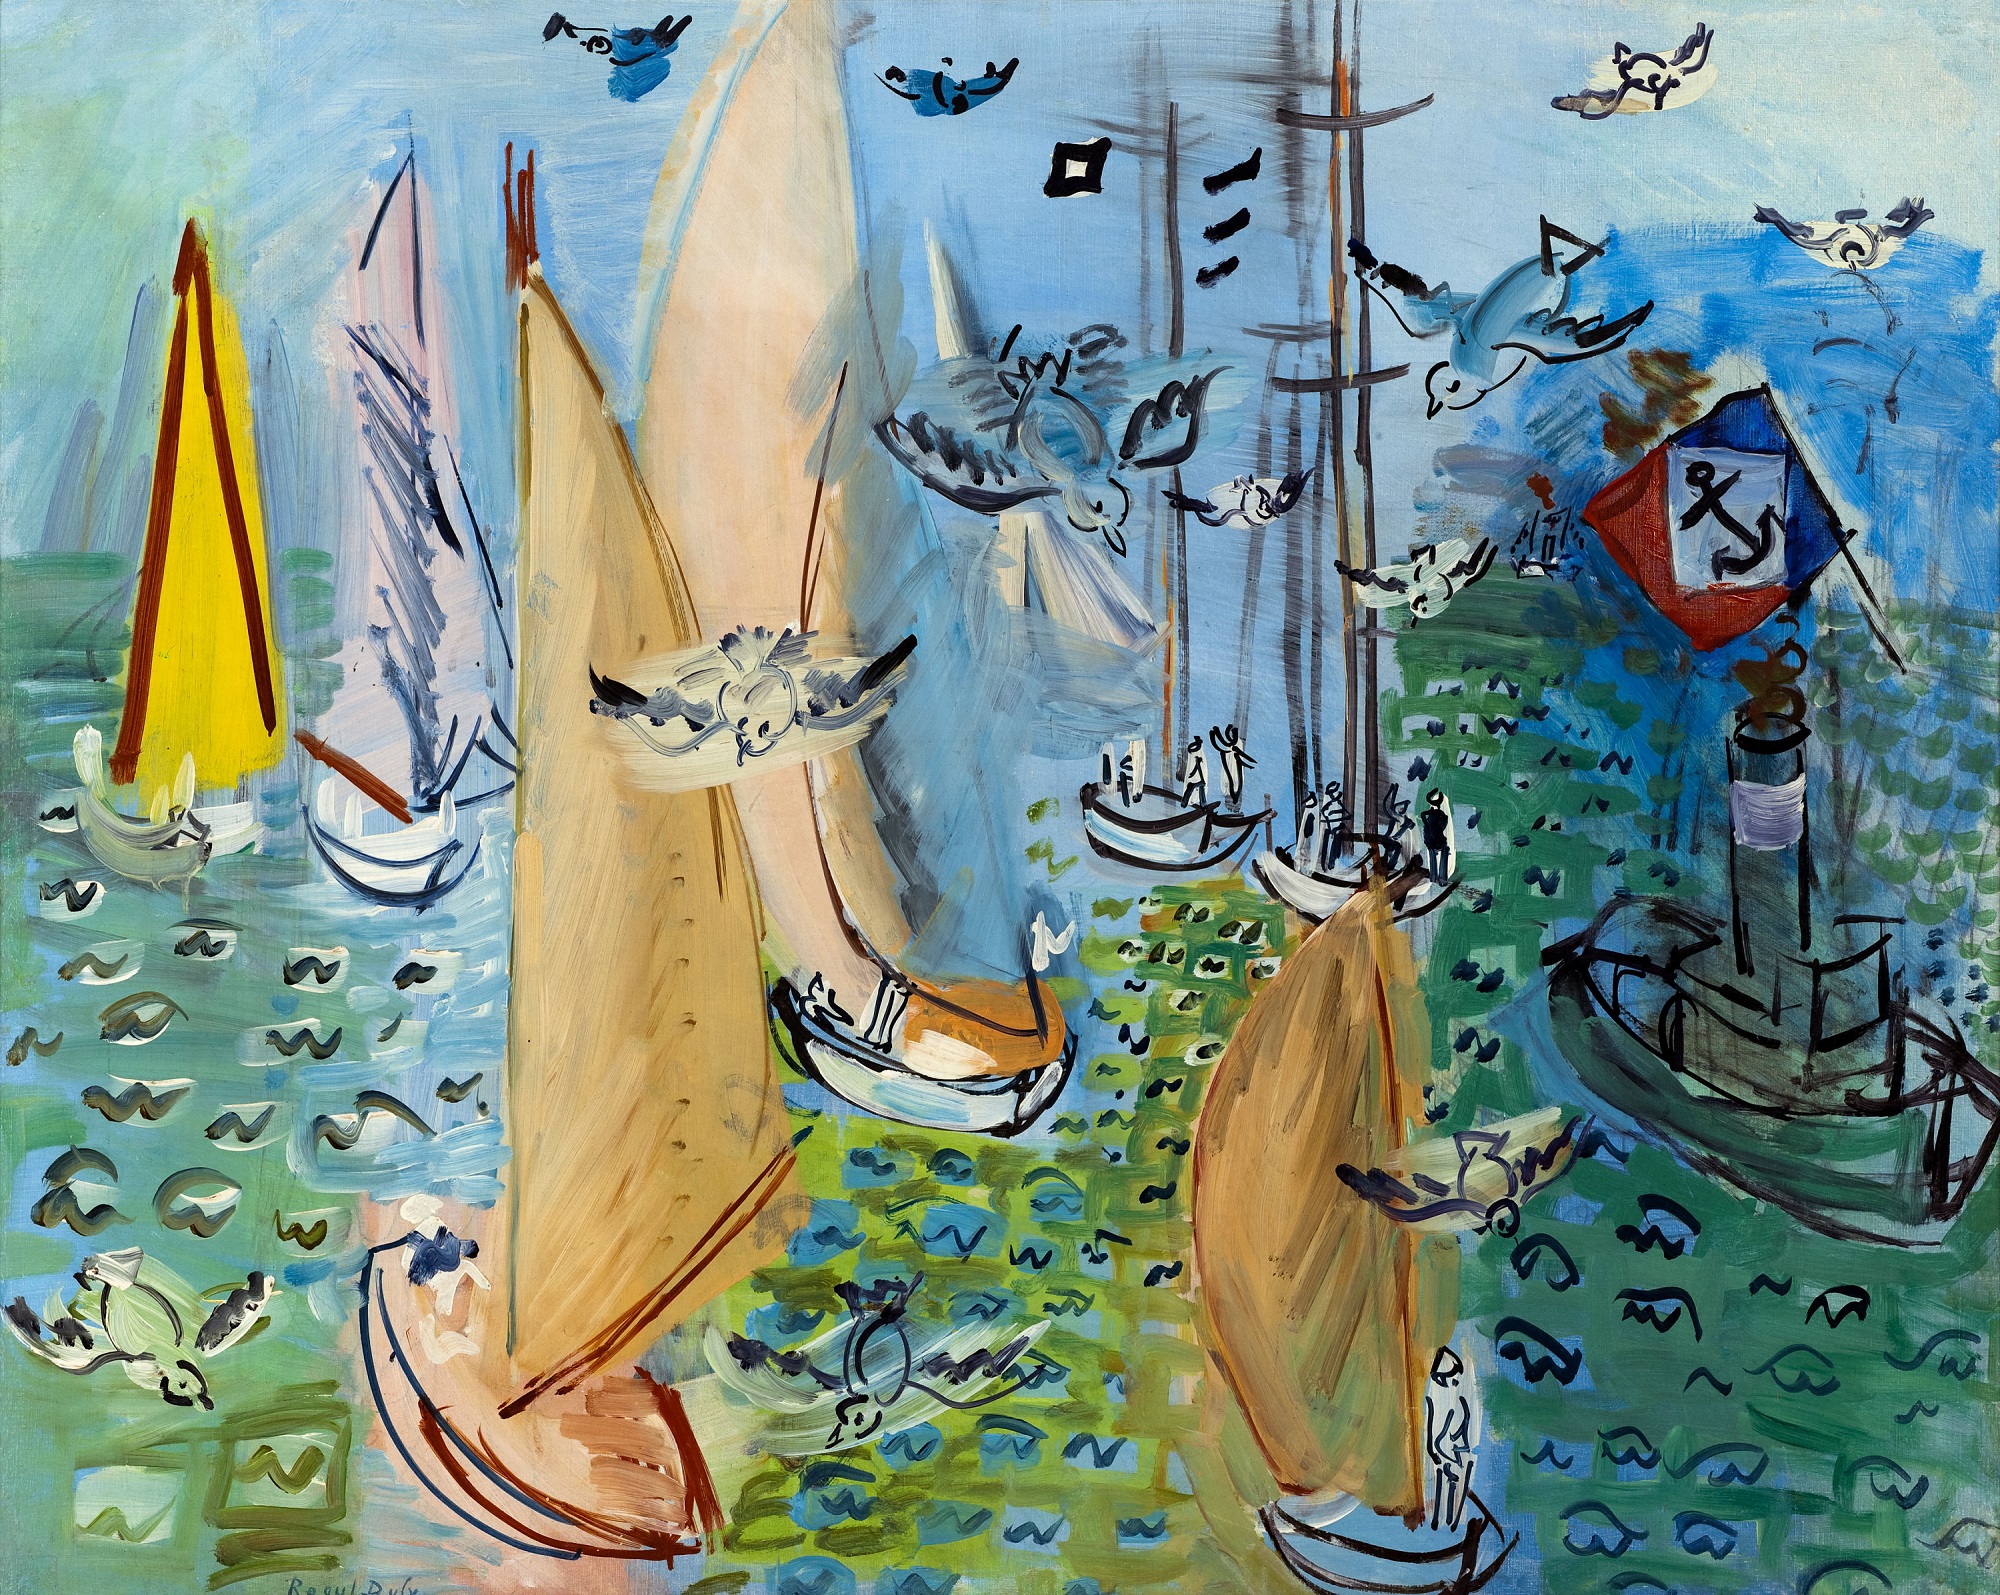 Raoul Dufy (1877-1953), Régates aux mouettes, vers 1930. Huile sur toile, 81 x 100 cm. Musée d'Art Moderne de Paris, legs de Mme Berthe Reysz en 1975. Photo service de presse. © photo : Paris Musées / Musée d’Art Moderne © Adagp, Paris, 2022